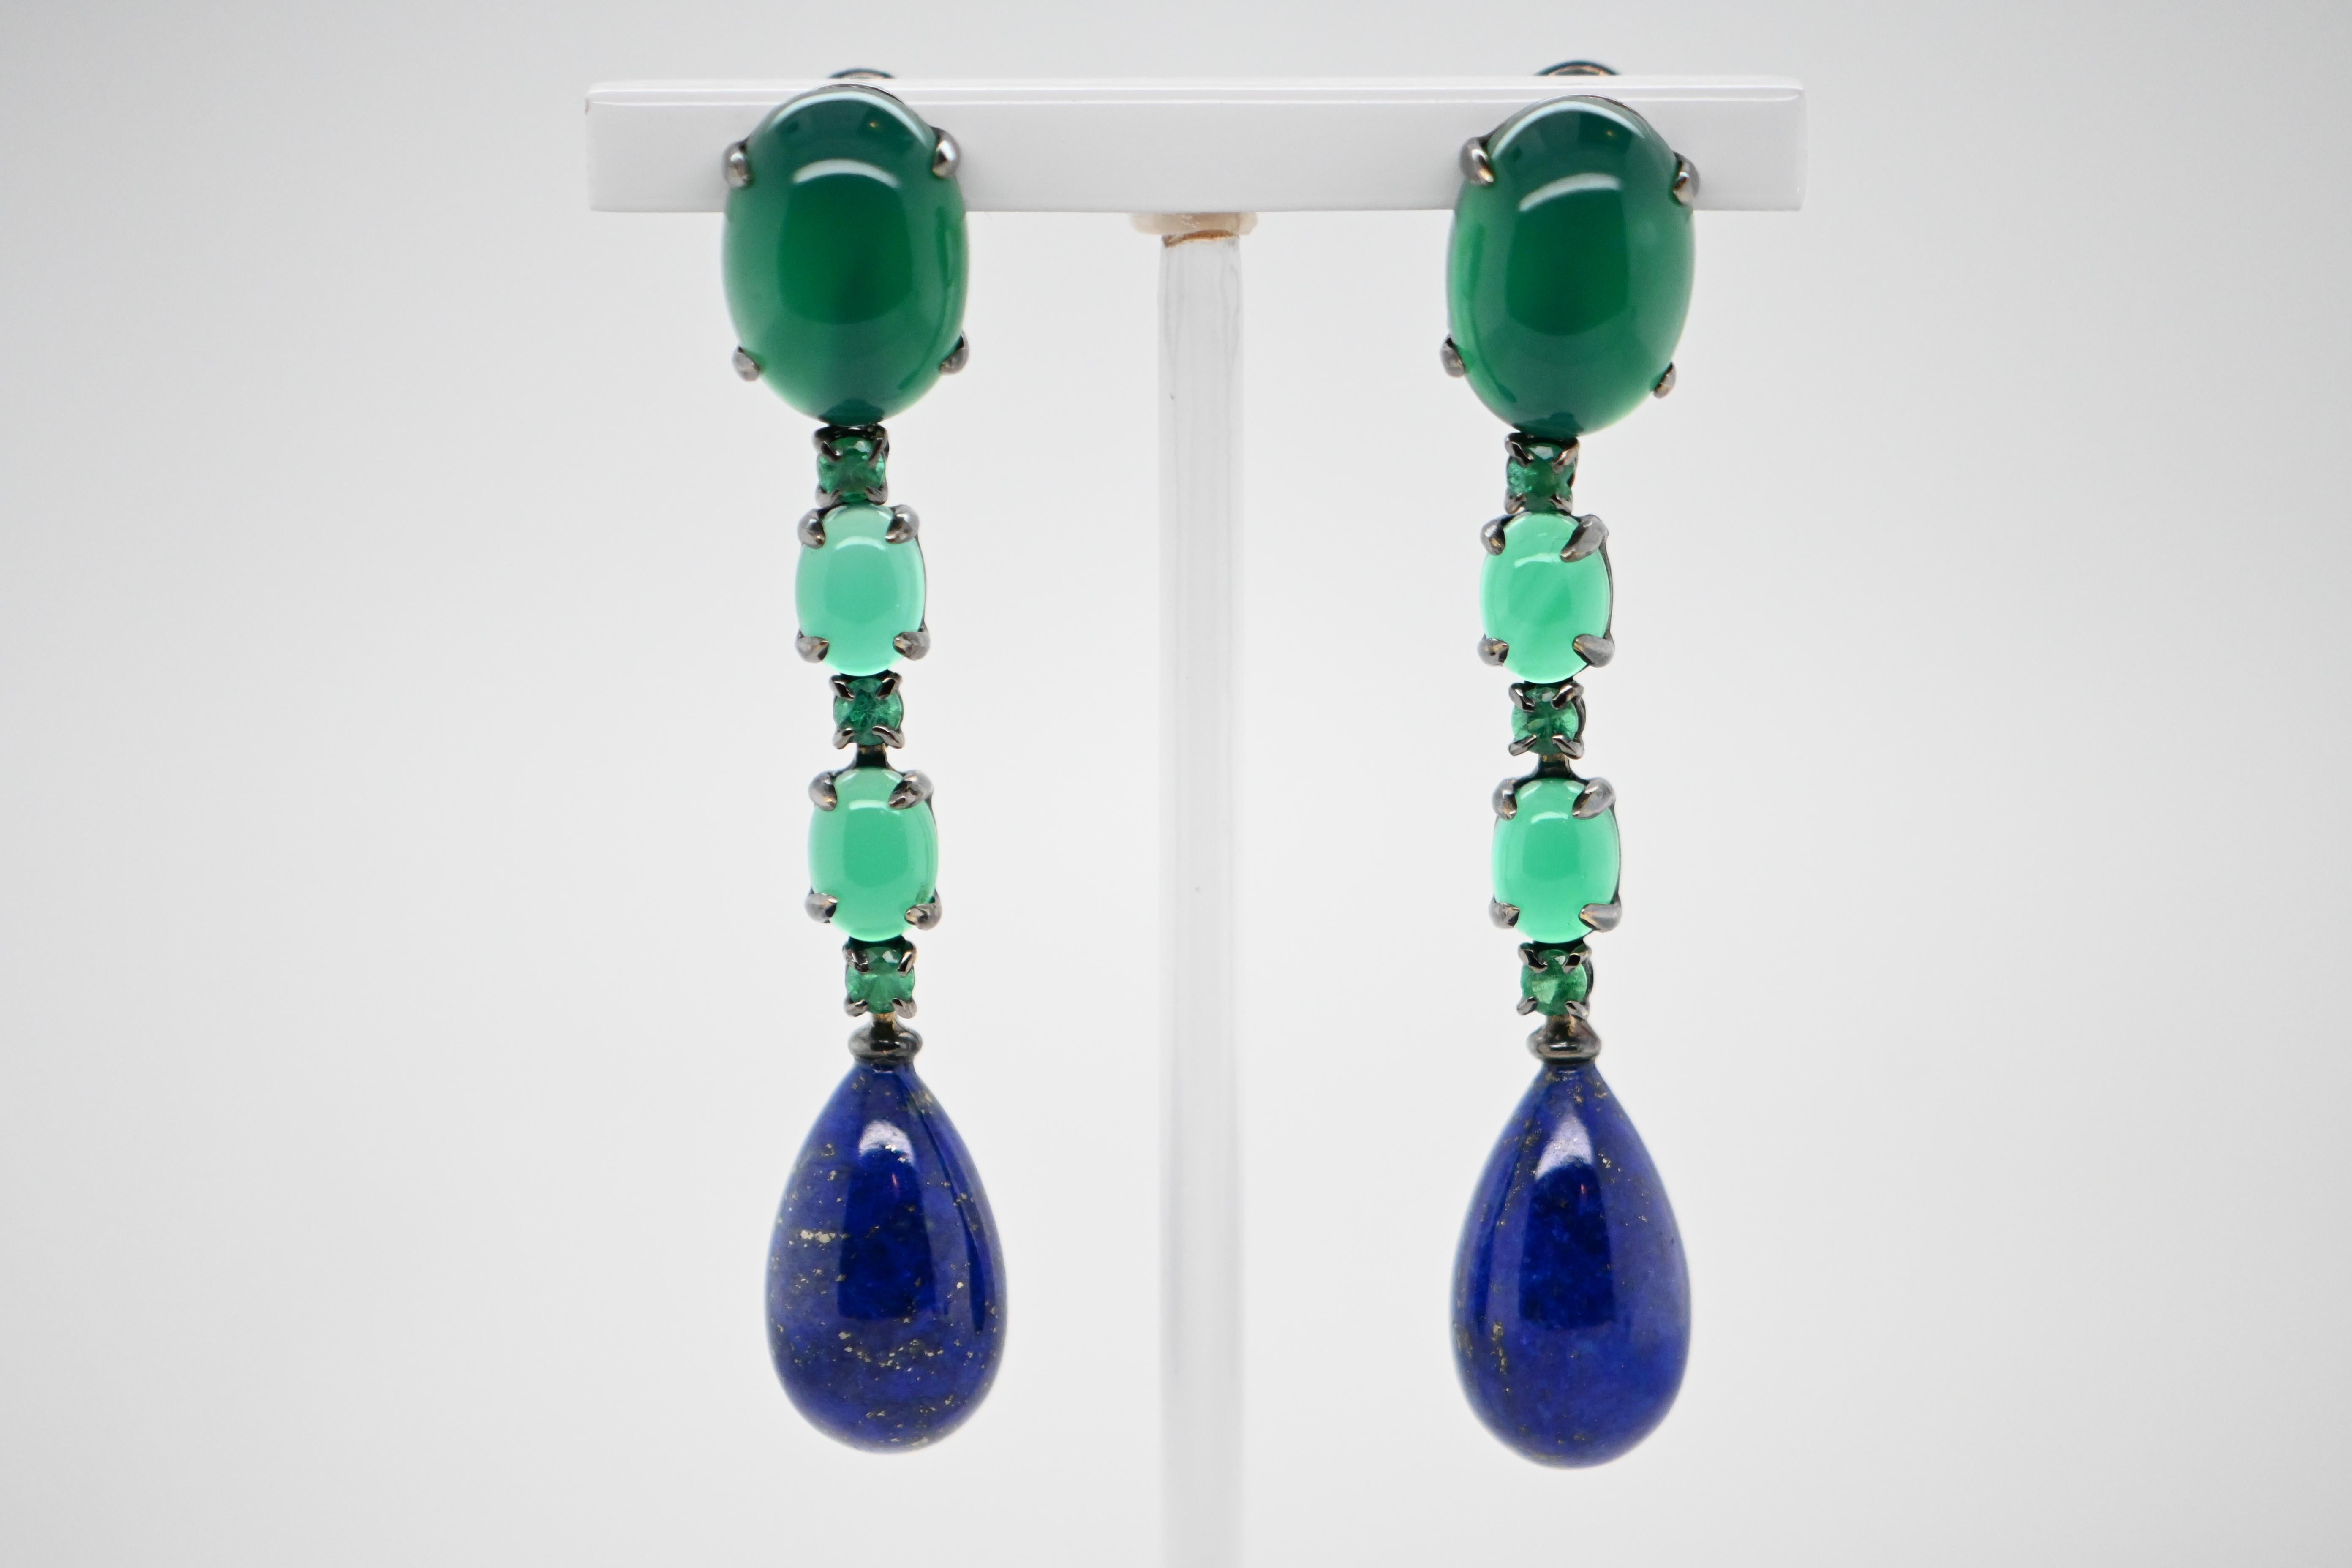 Découvrez ces somptueuses boucles d'oreilles chandelier en agate verte et lapis-lazuli, magnifiquement mises en valeur par un support en or blanc 18 carats. Ces bijoux d'exception sont le mariage parfait entre la beauté des pierres naturelles et